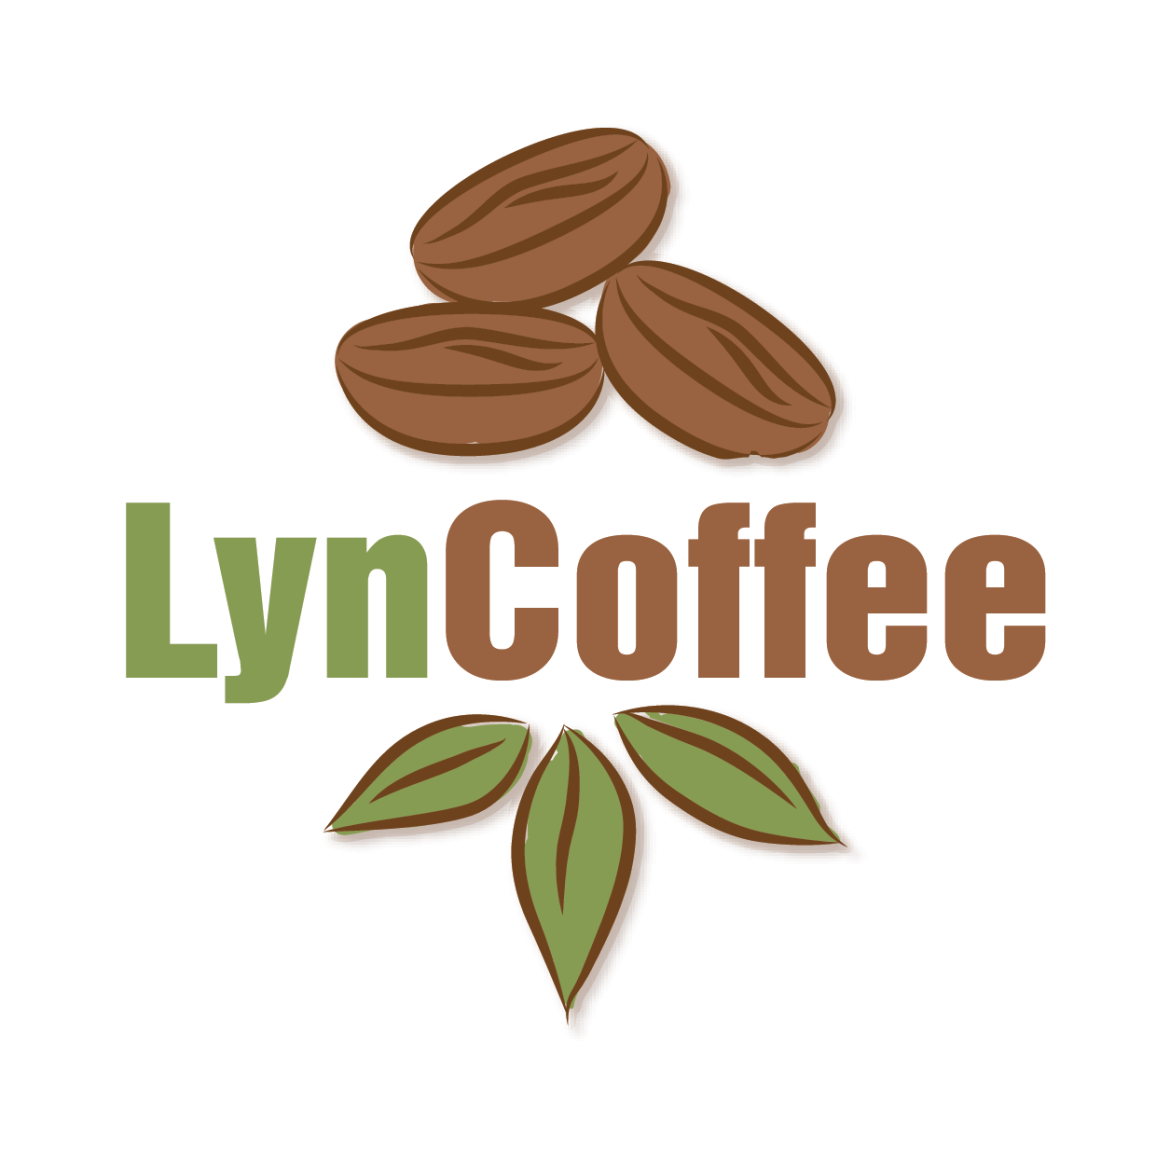 Hành trình khởi nghiệp của Anh Vũ Văn Tiến: Từ CEO công ty xuất nhập khẩu nông sản đến sáng lập viên thương hiệu cà phê Lyncoffee”